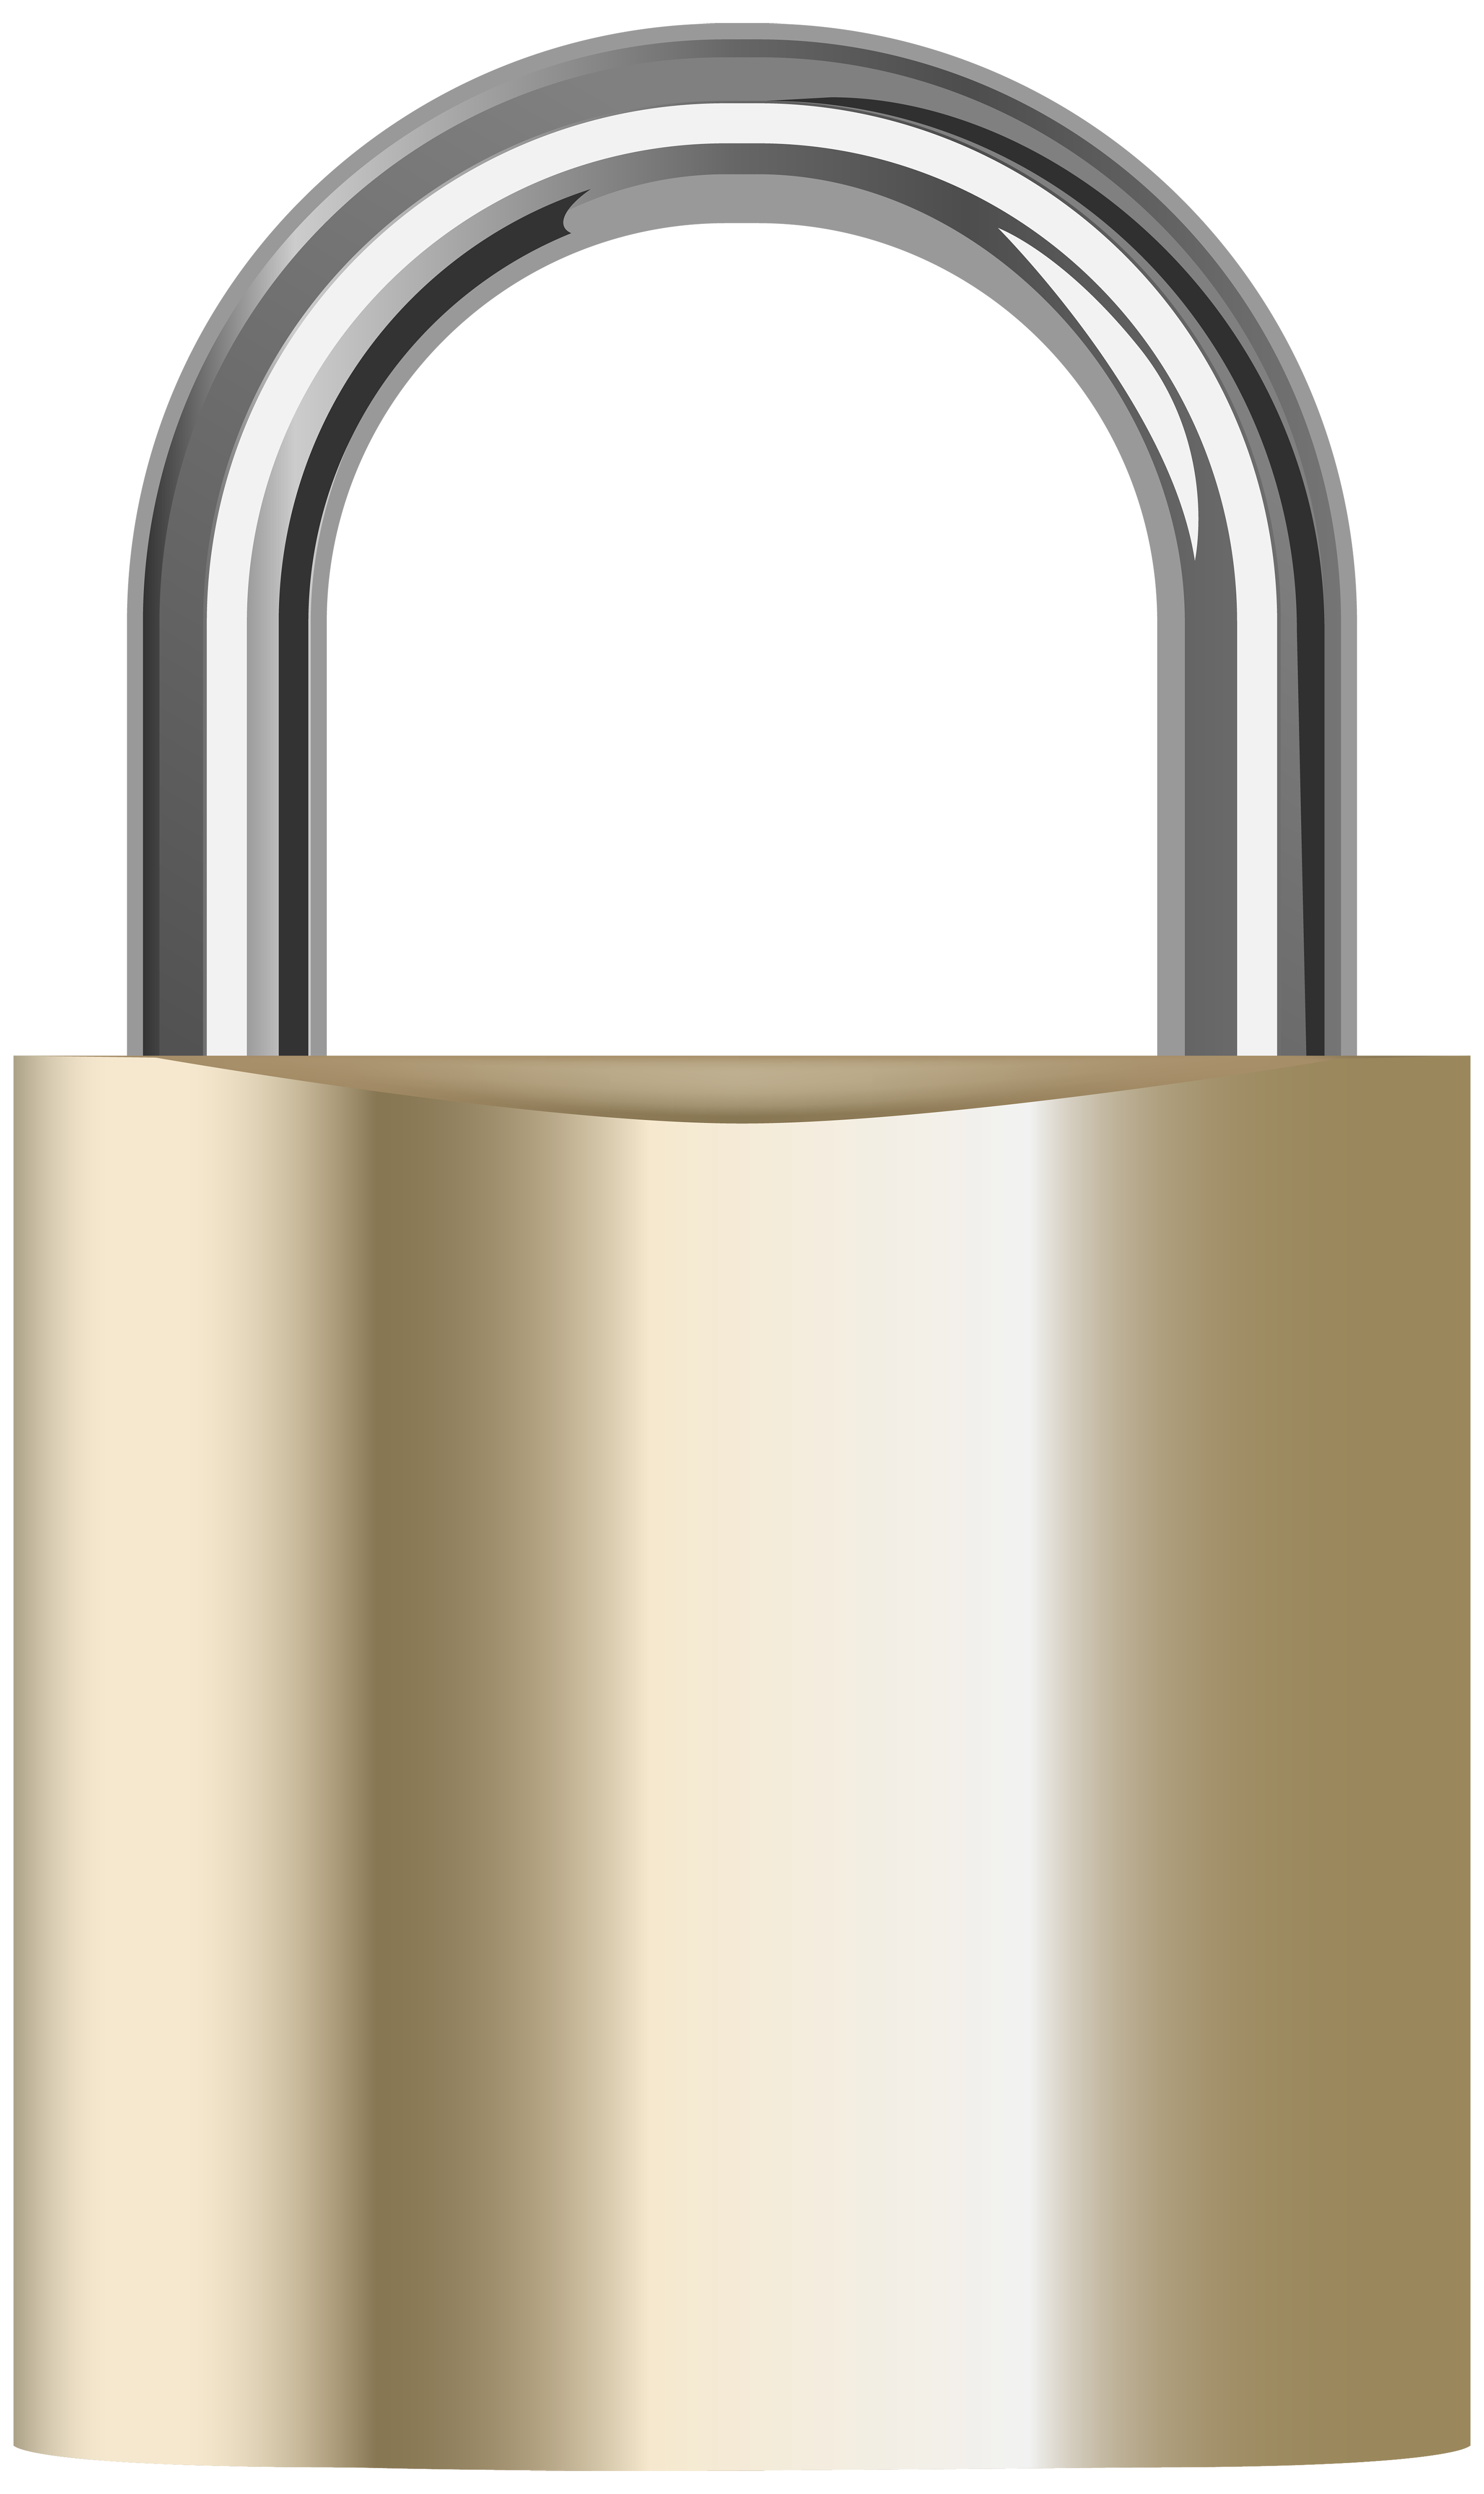 clipart door locks - photo #37